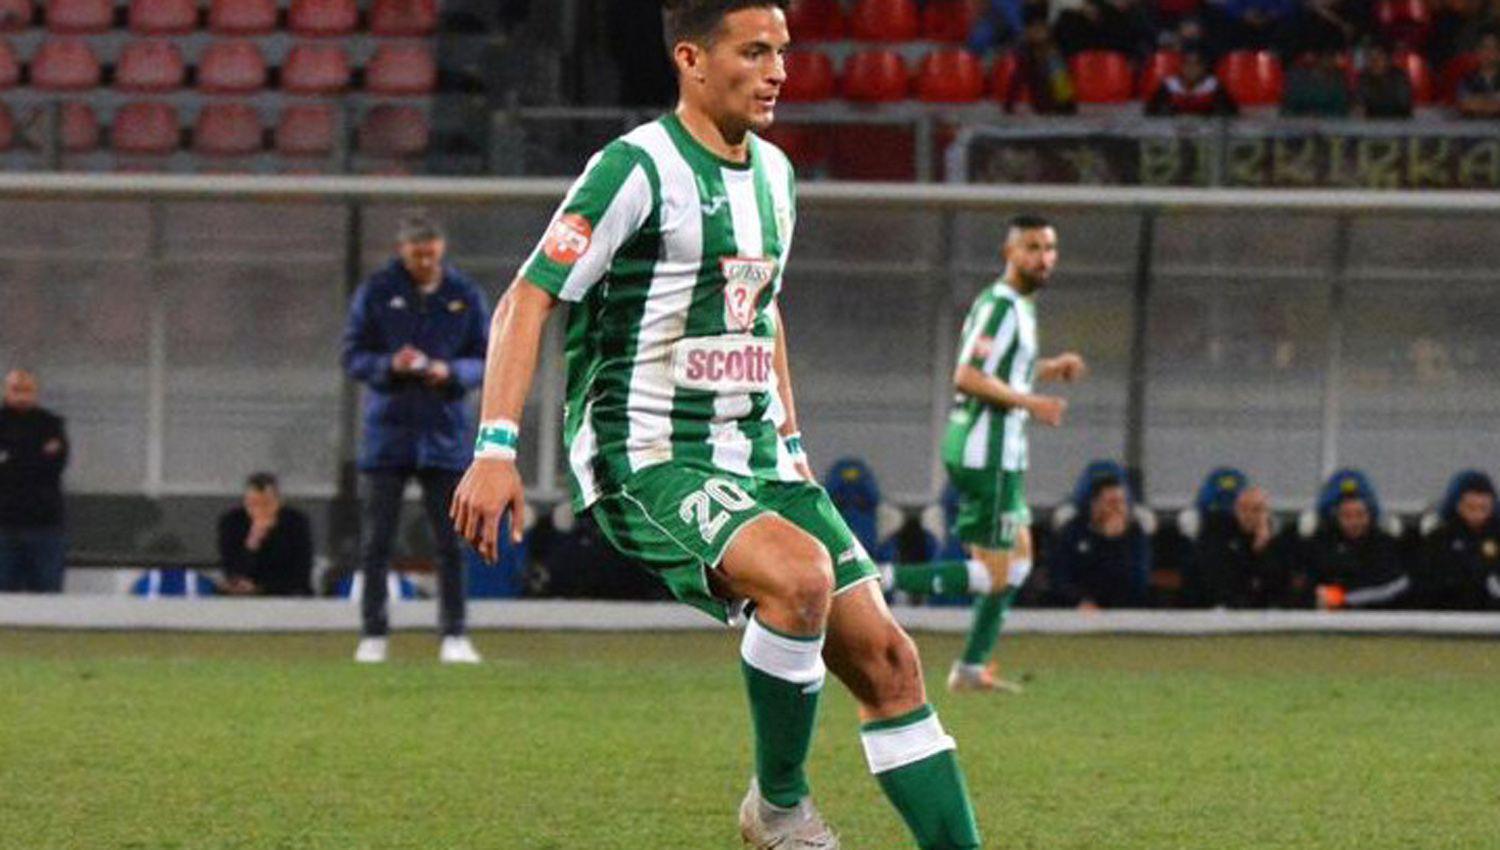 García est� hace tres años en Malta pero
esta fue su primera temporada en el Floriana FC declarado campeón